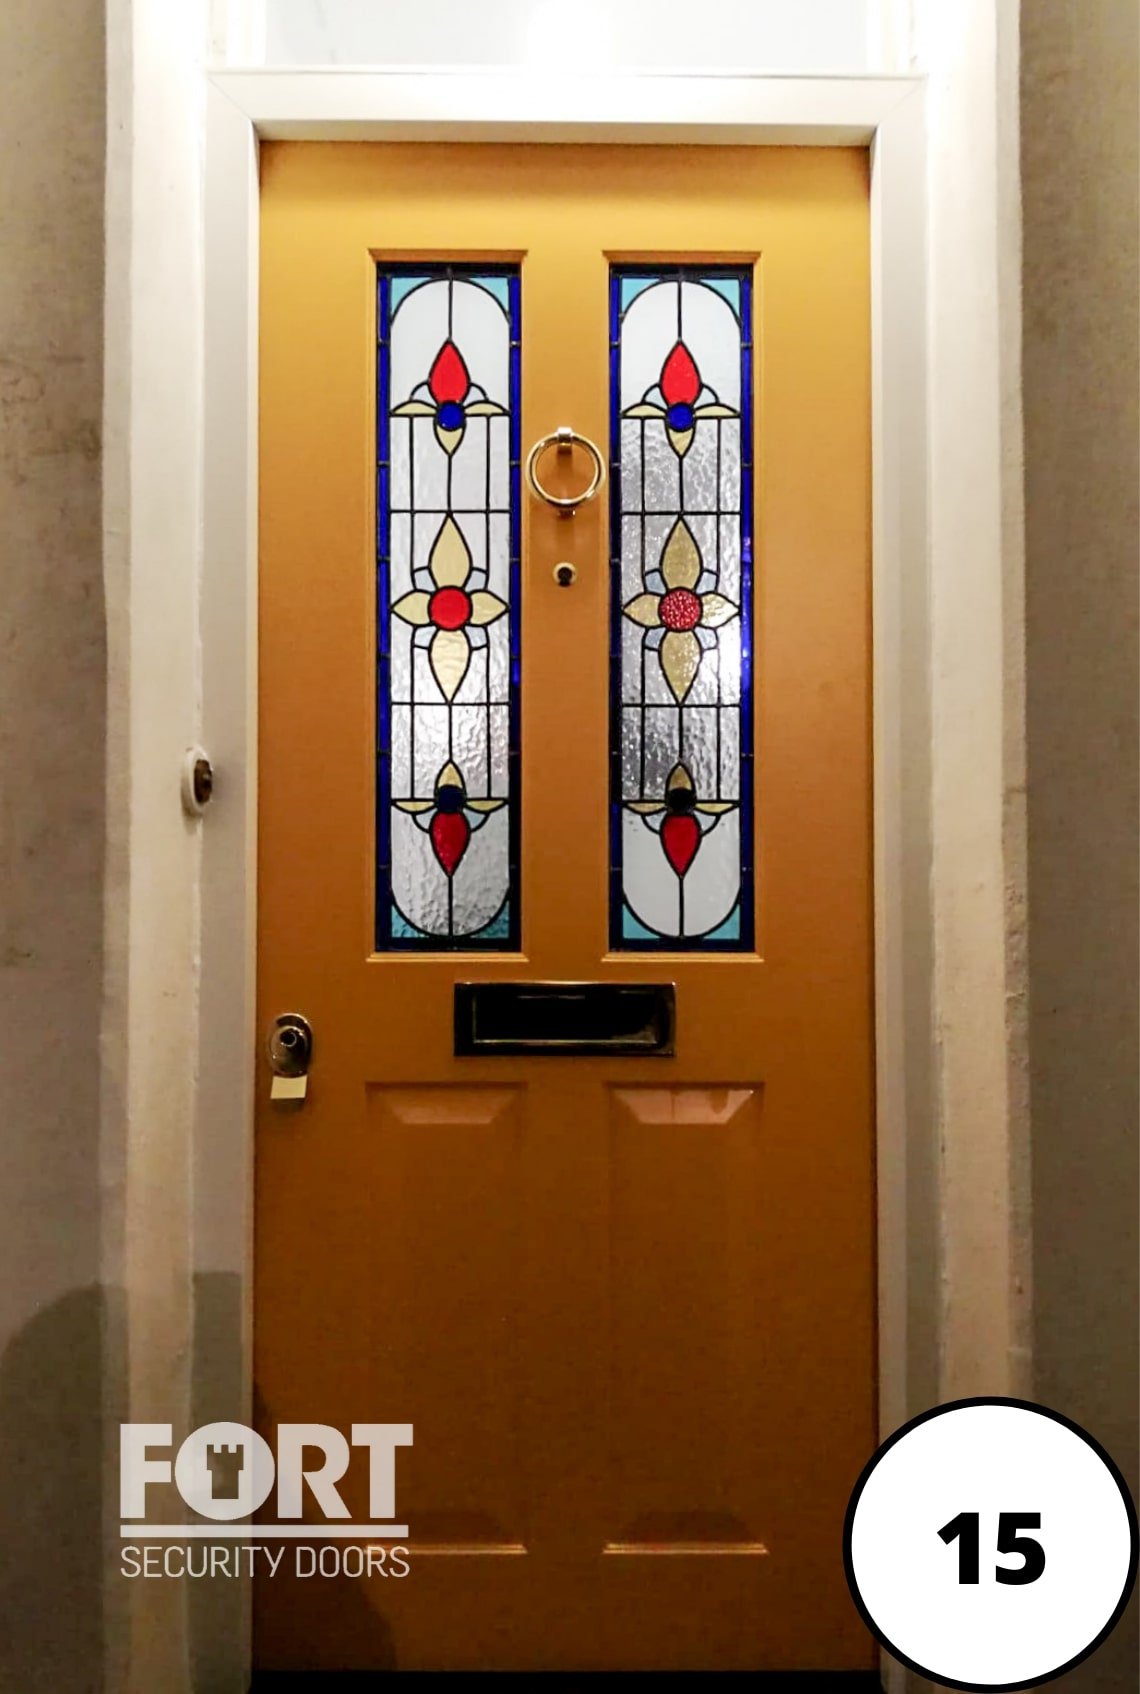 https://fortpremiumdoors.co.uk/wp-content/uploads/2021/11/0015-Custom-FORT-Security-door-reinforced-Victorian-home-security-design-with-glass-2.jpg